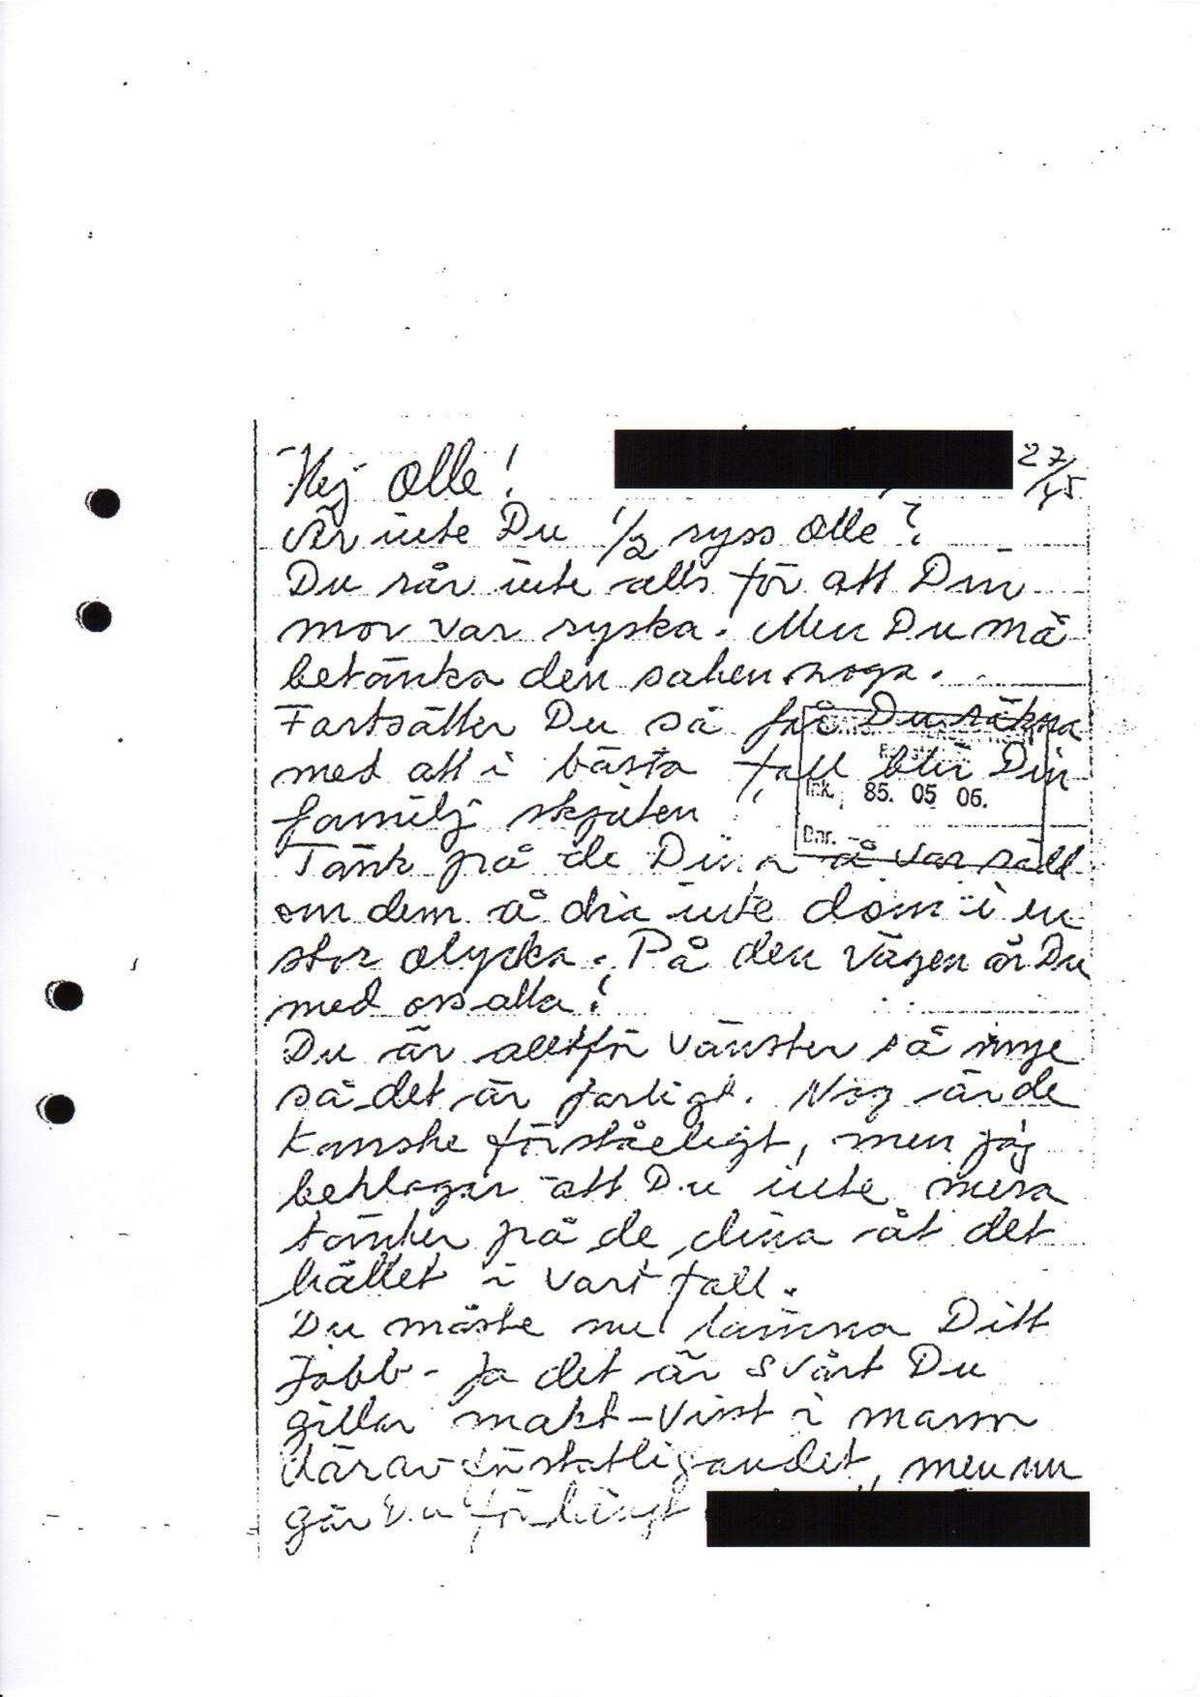 Pol-1989-12-05 D11509-01 Erkännanden Palmemordet.pdf